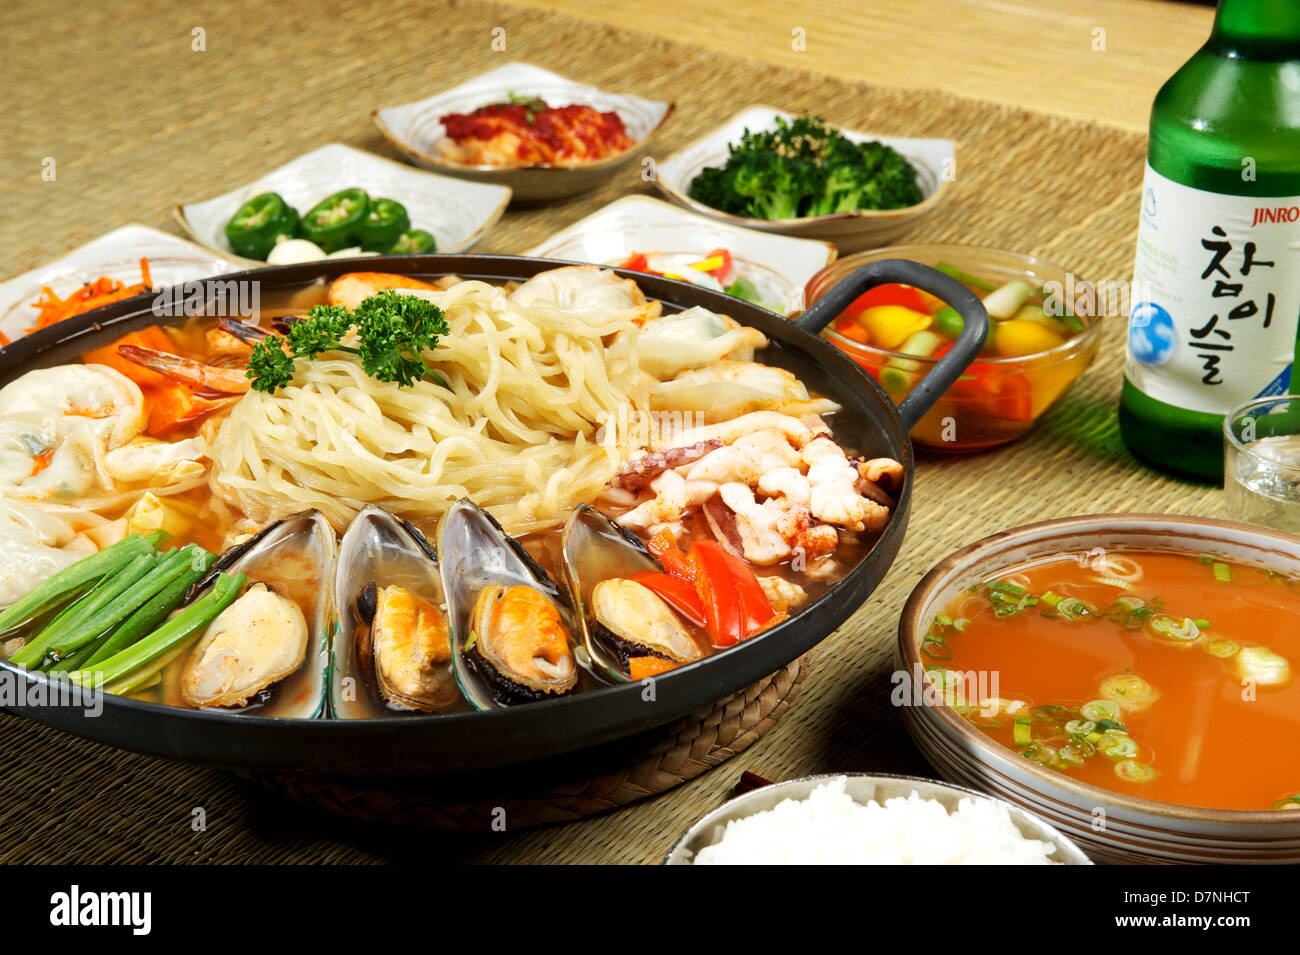 Koreanische Meeresfrüchte Hotpot in einem koreanischen Restaurant Muscheln und Nudeln Stockfoto